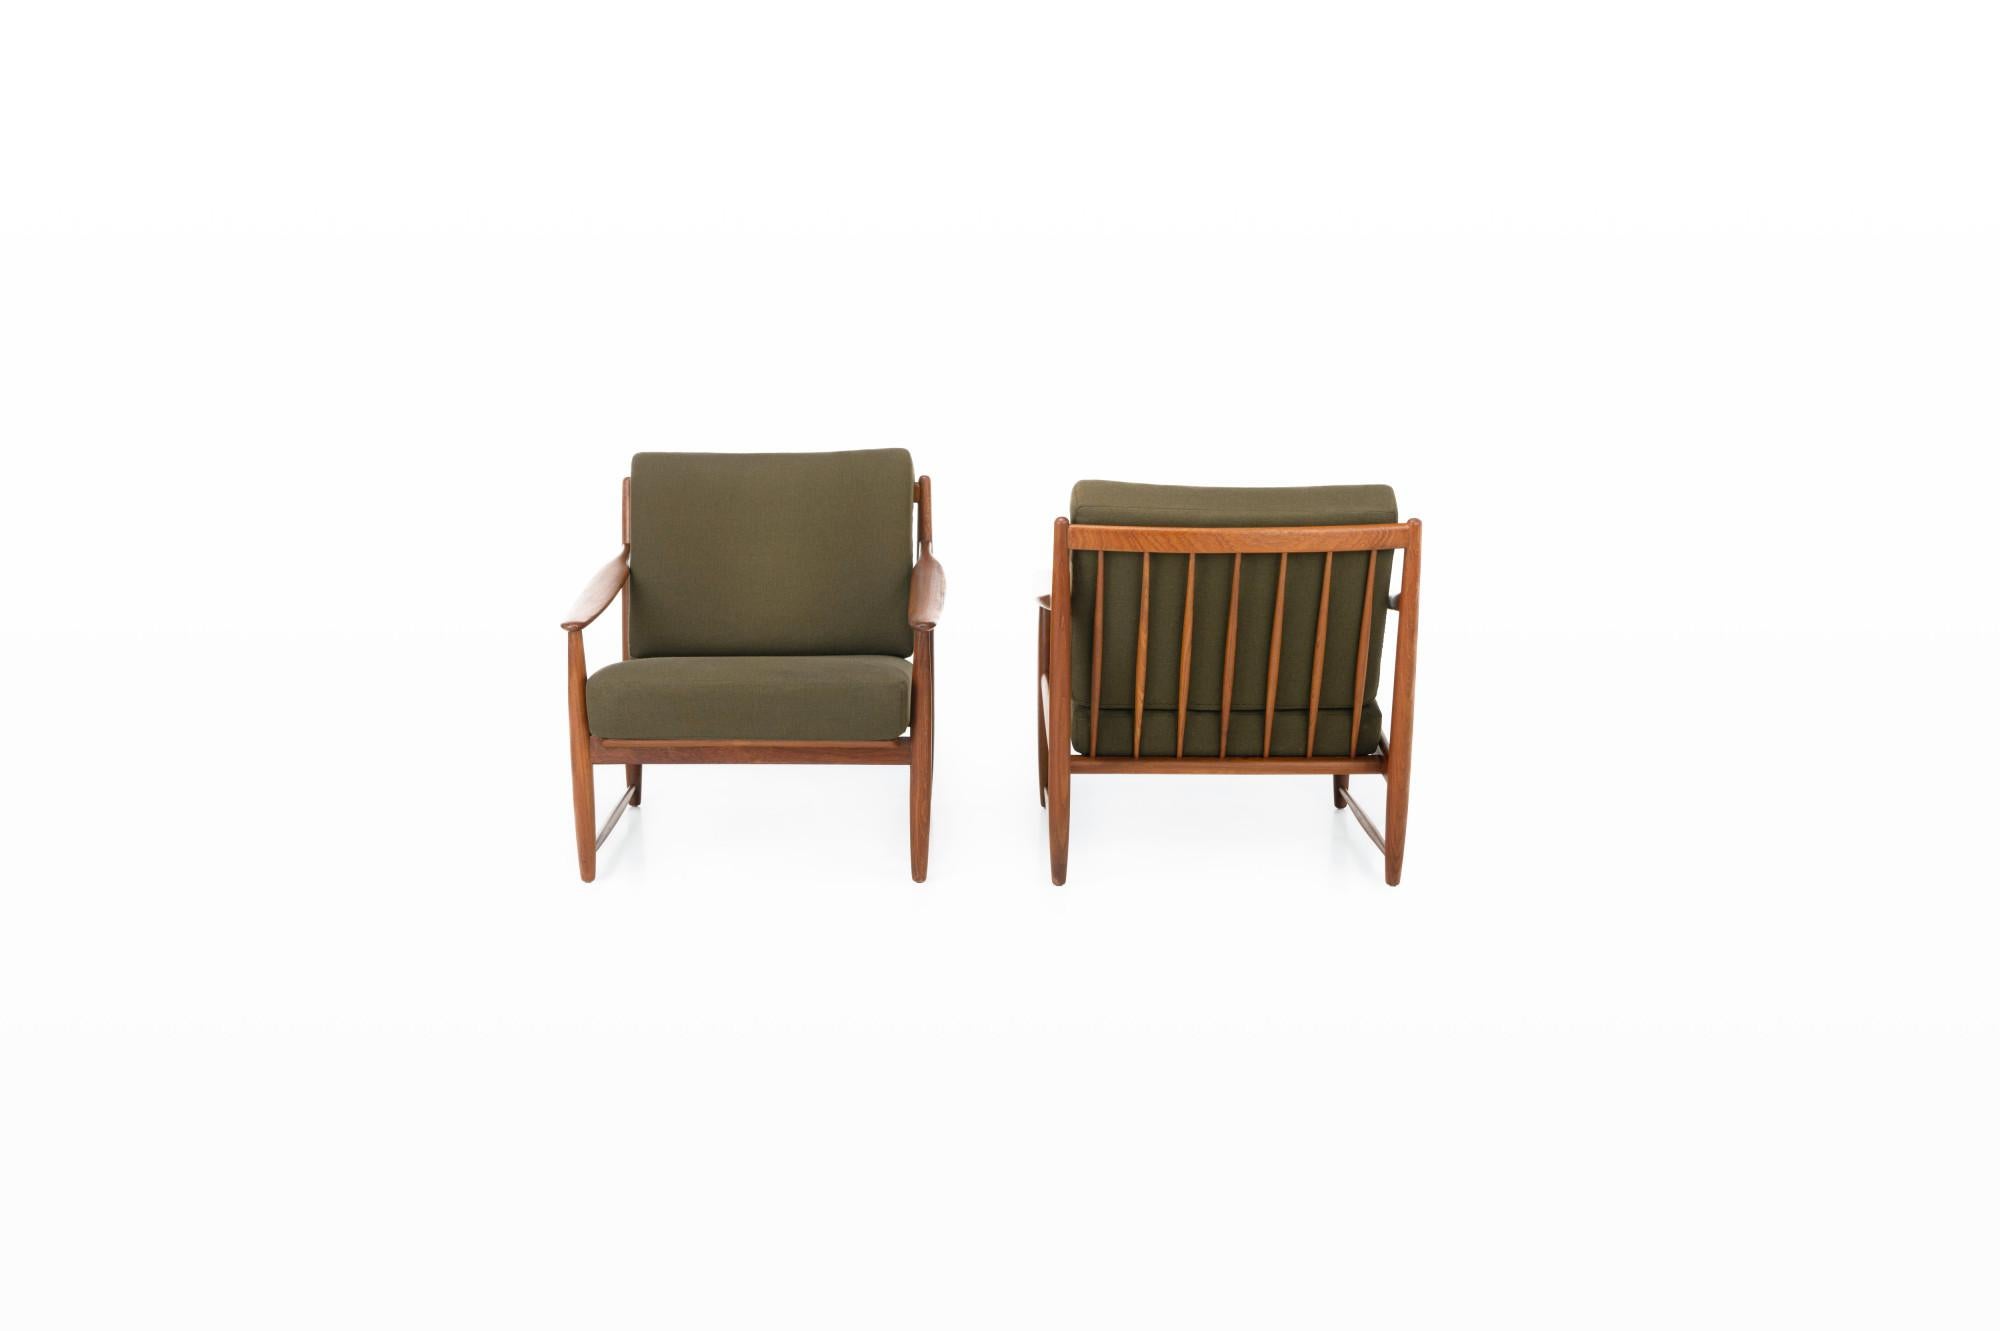 Satz von zwei Sesseln, hergestellt in Dänemark in den 1960er Jahren. Die Sessel haben ein Gestell aus Teakholz und die Kissen sind noch mit dem ursprünglichen khakigrünen Stoff bezogen.